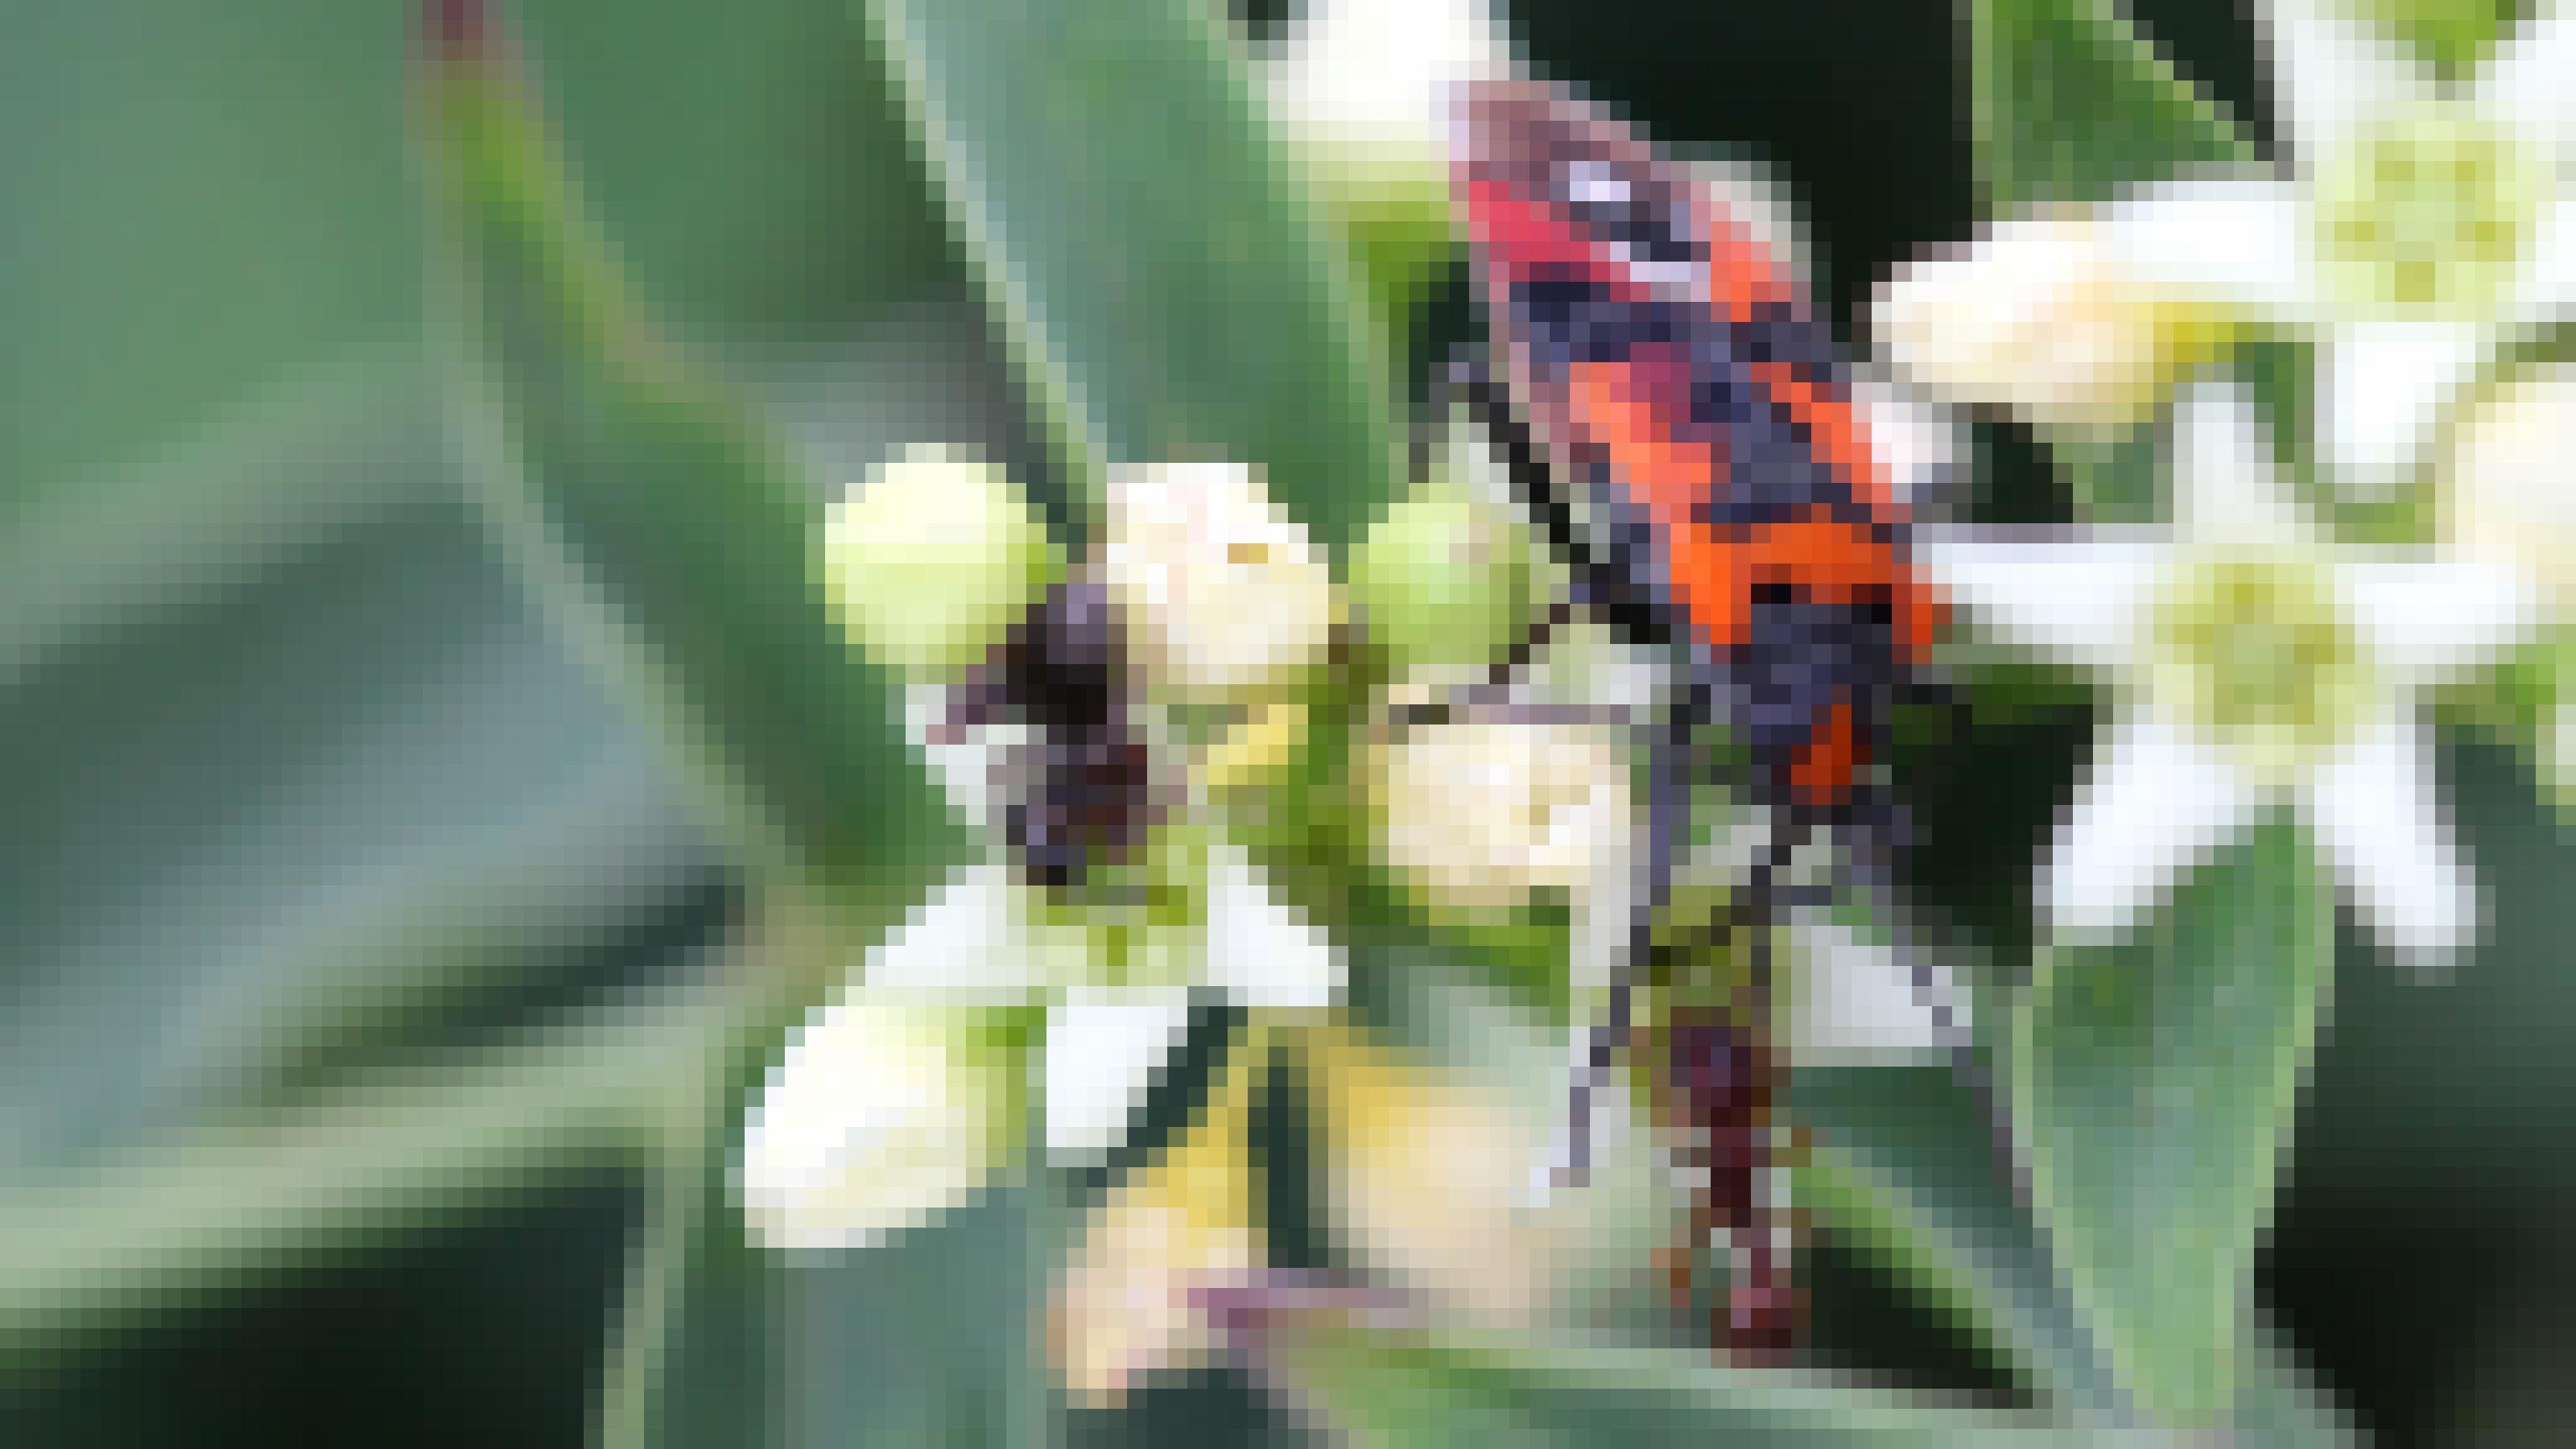 Ein rot-schwarz gezeichnetes Insekt sitzt auf einer weißen Blüte